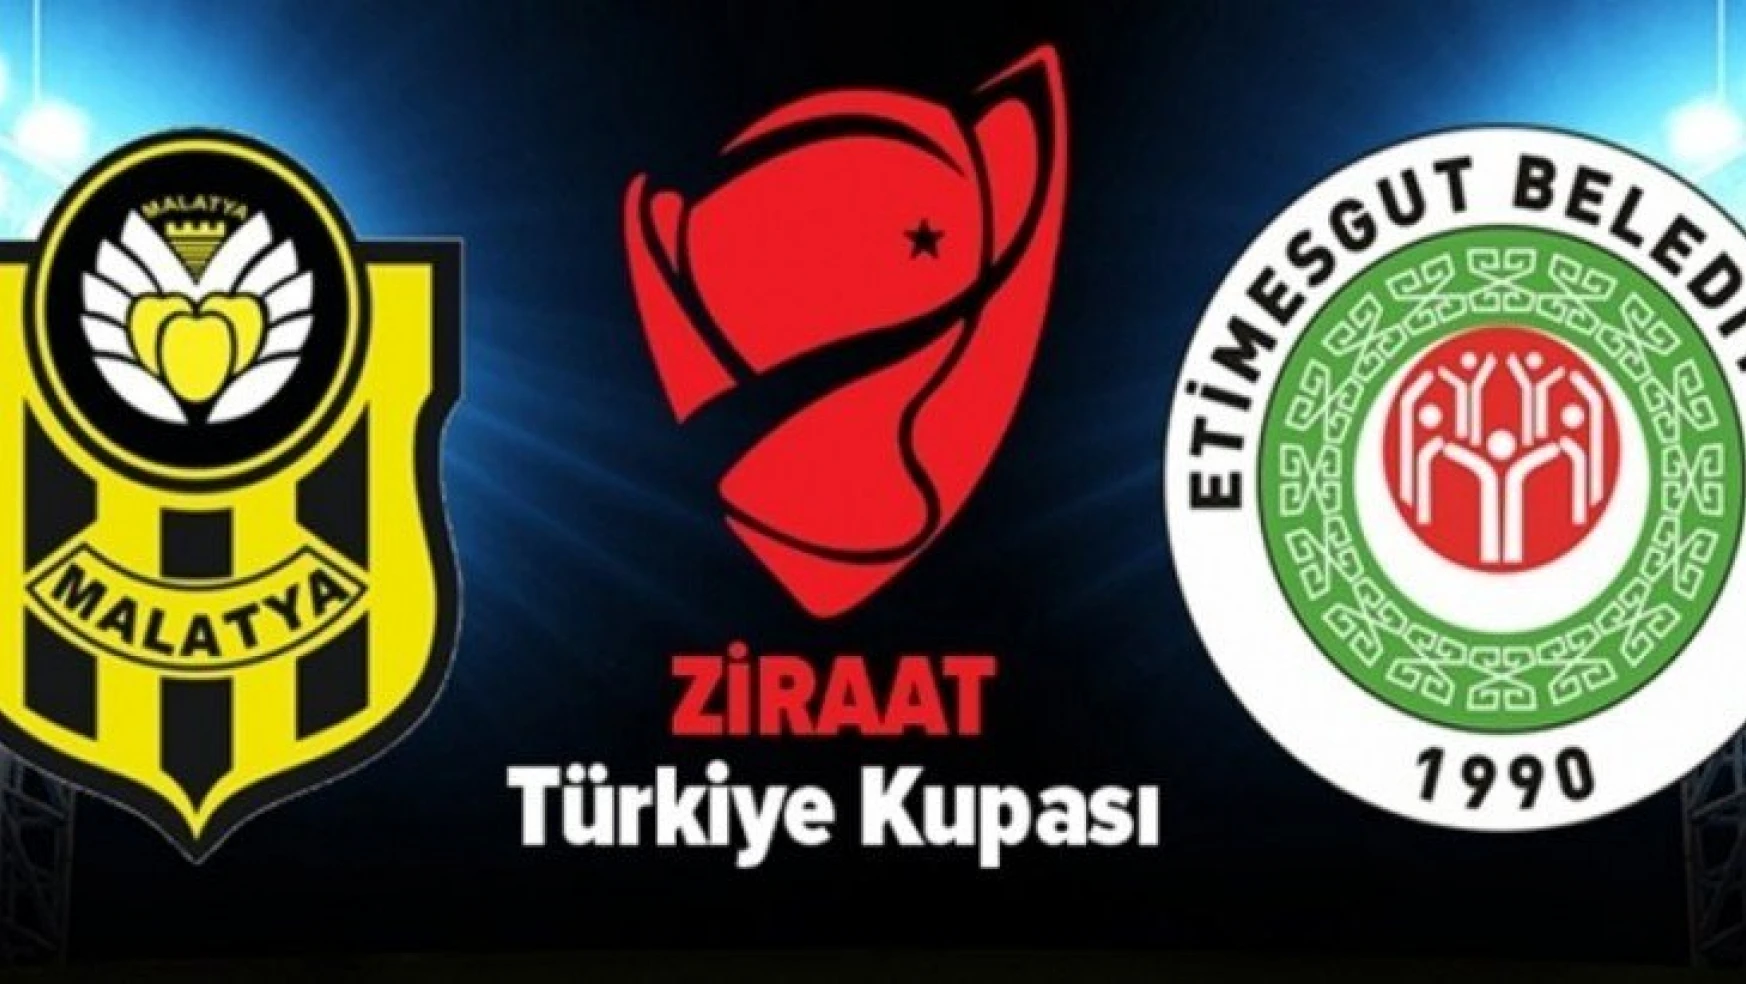 Yeni Malatyapor 2-0 Etimesgut Belediyespor